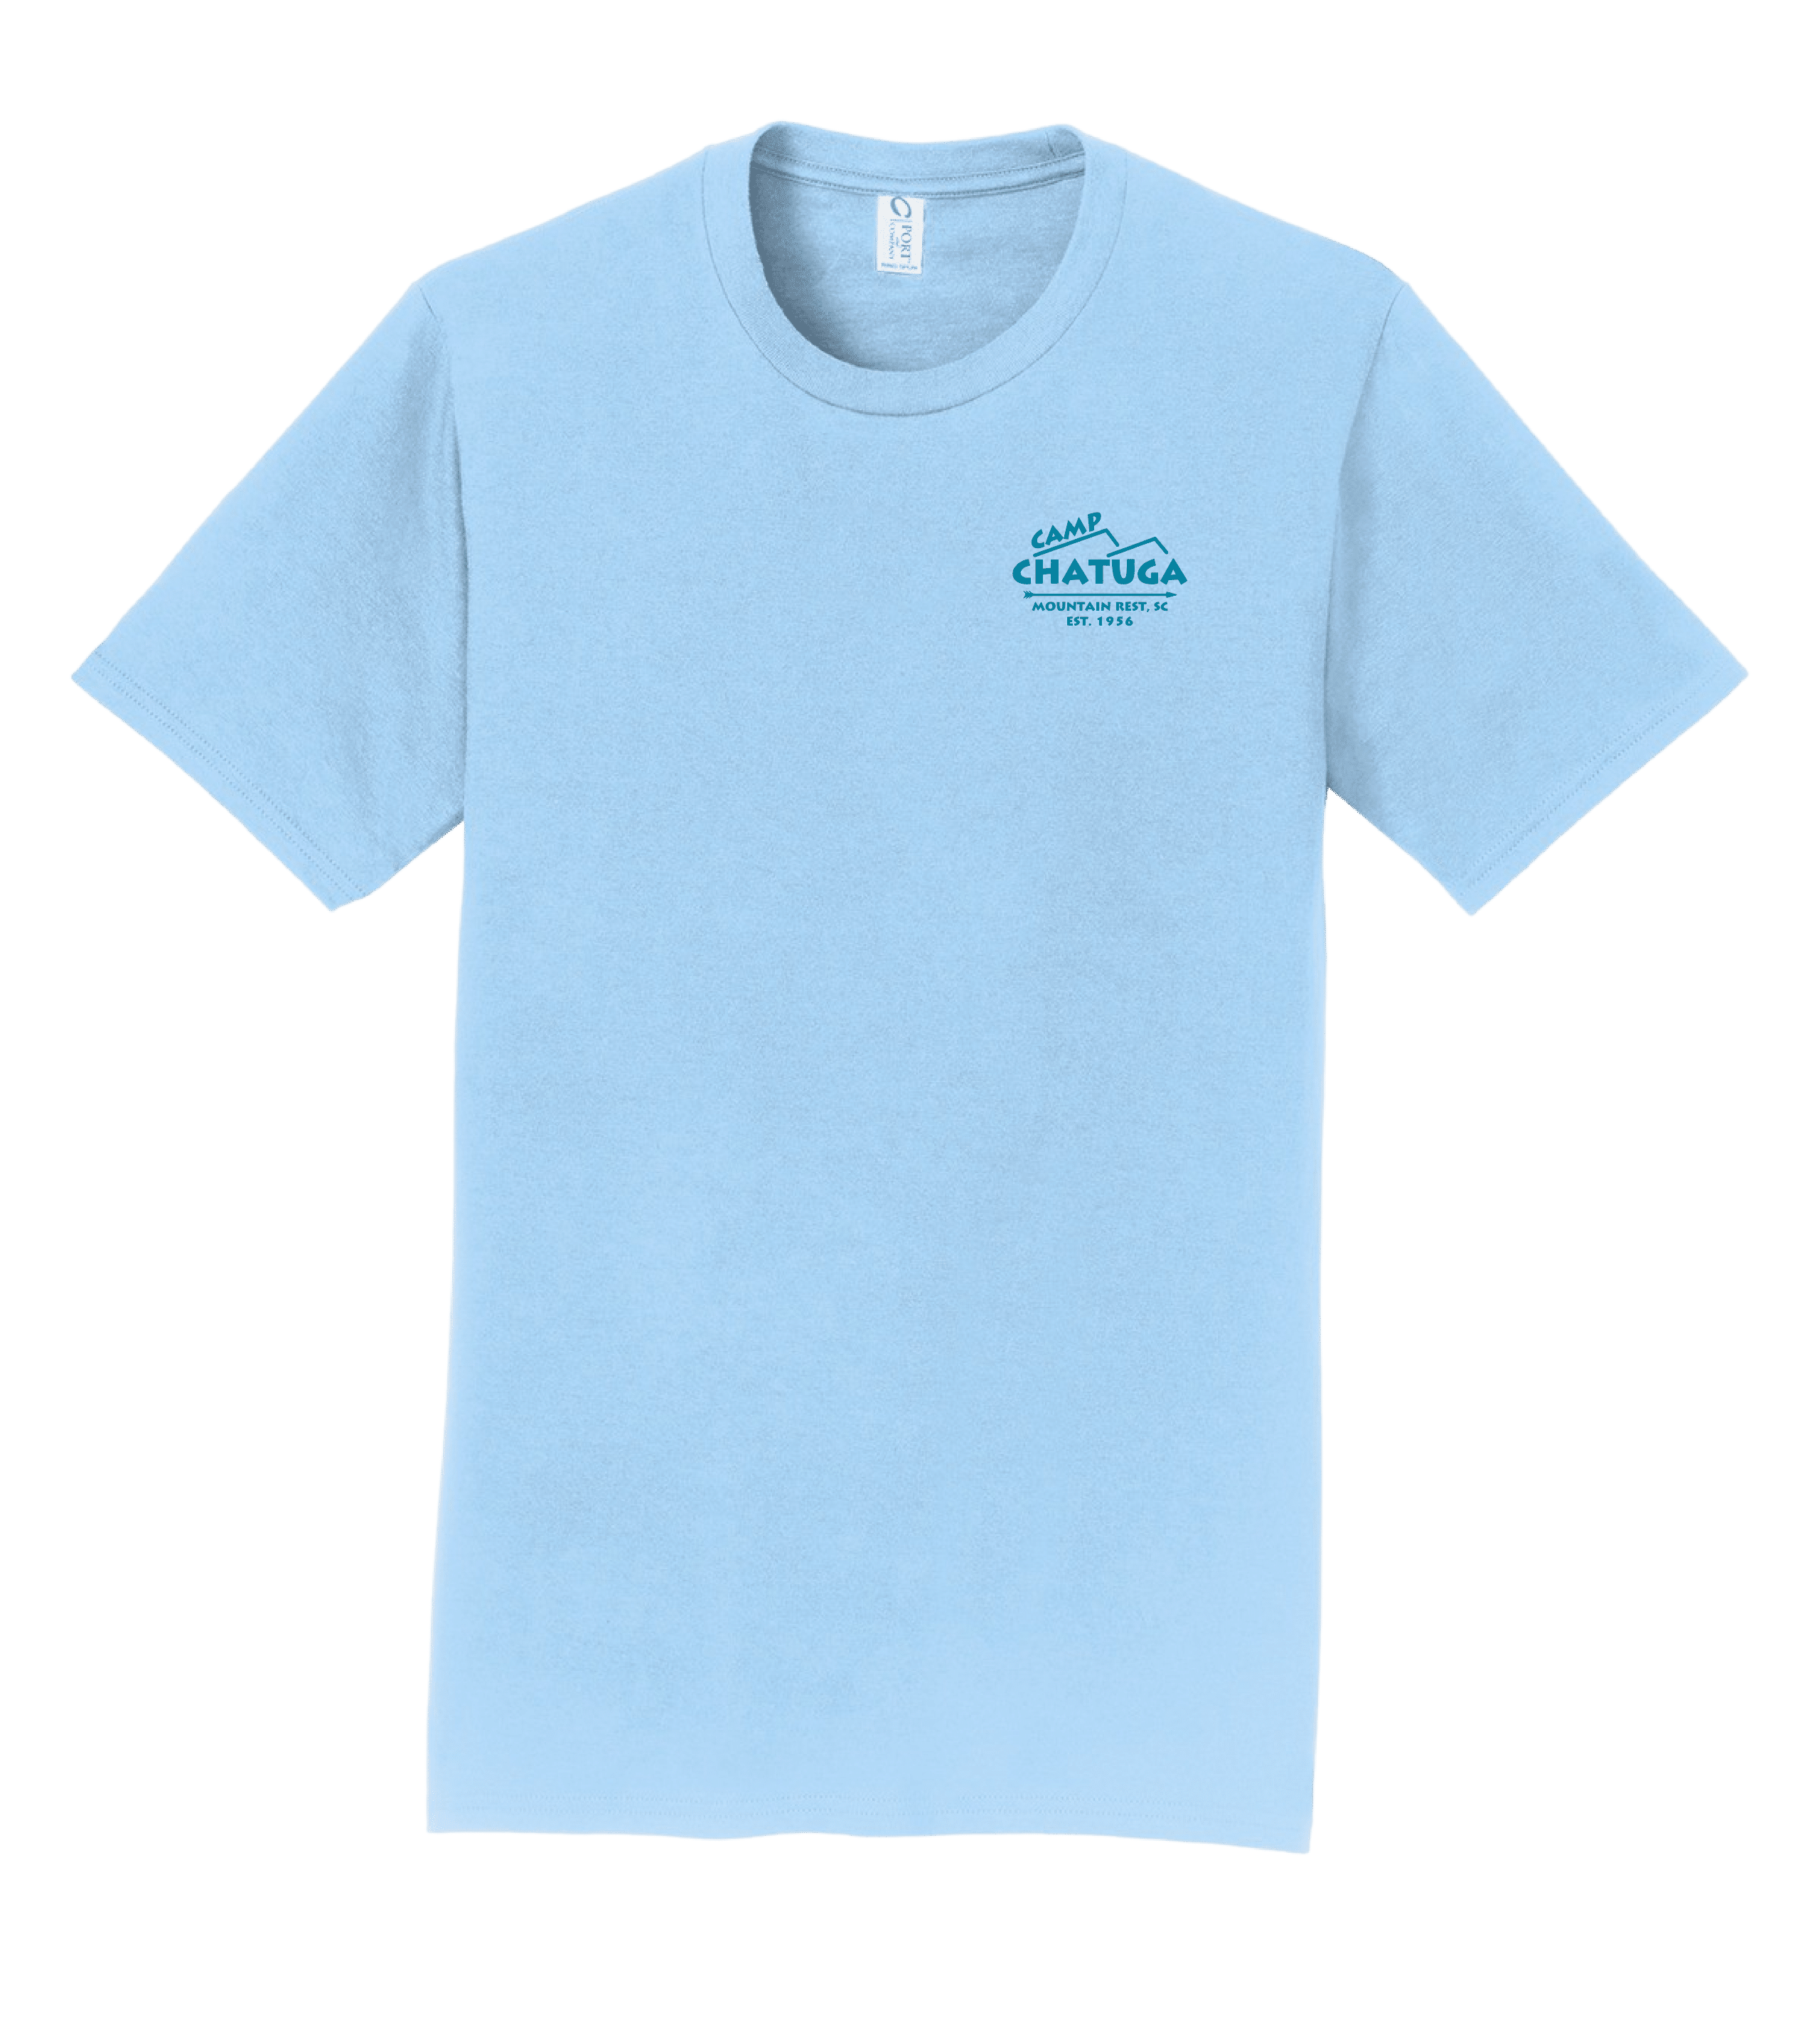 T-Shirts – Campfire Logo – Camp Chatuga